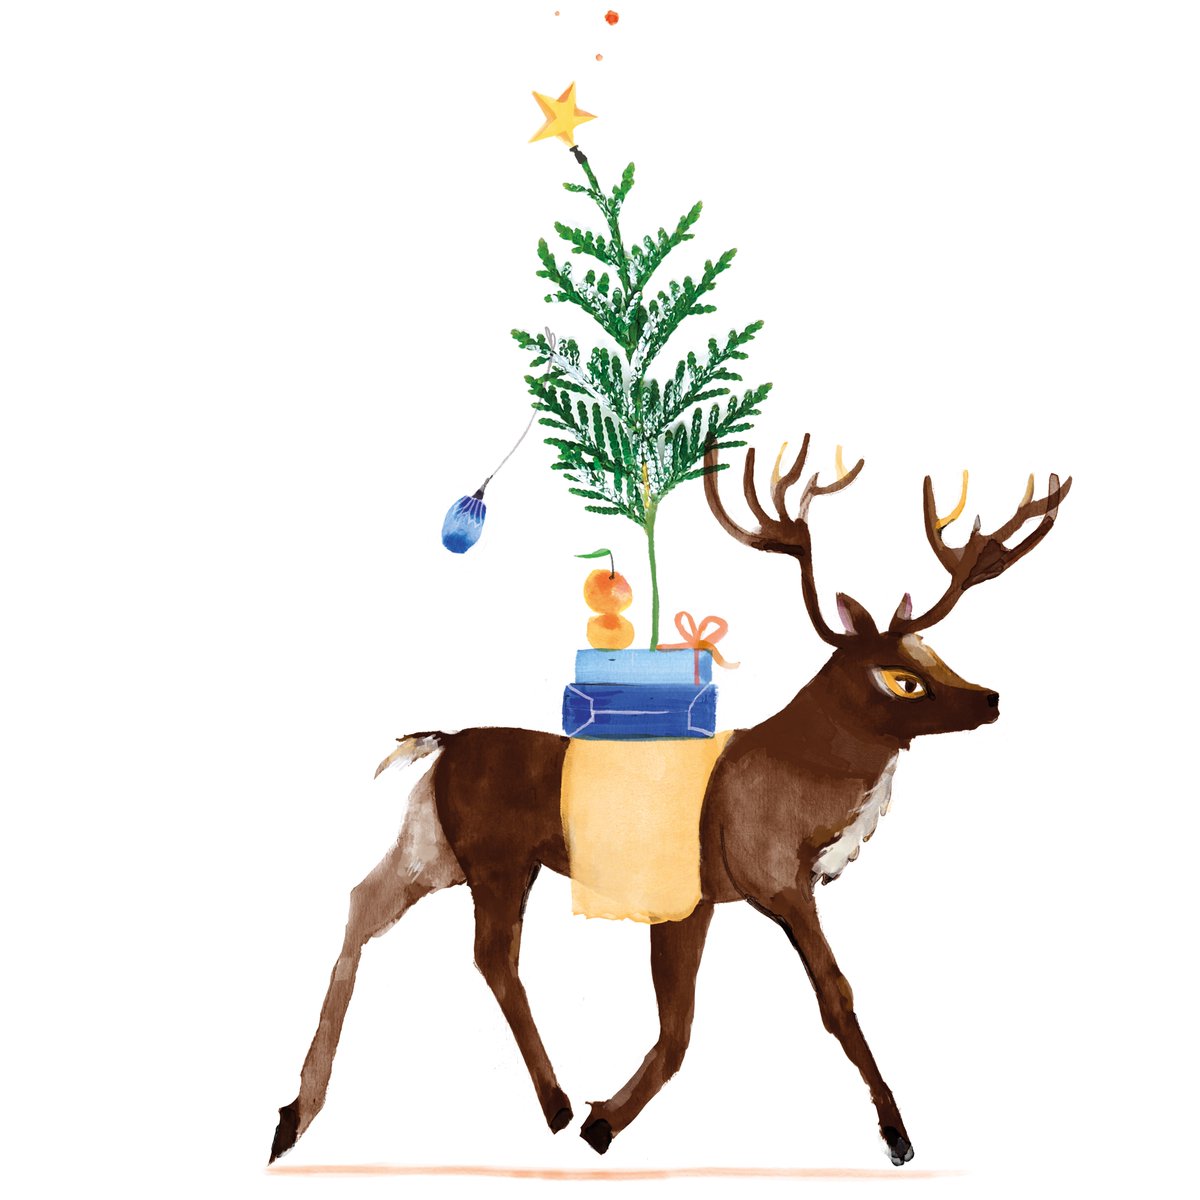 Reindeer Prepare....  @ClaudiKessels #illustrator #illustrationart #Illustrations #christmastime #santachristmas #antlers #christmas #reindeer #santaclaus #santa #santareindeerlist #santaclausreindeer #reindeercosplay #santagifts #santareindeer #christmasgifts